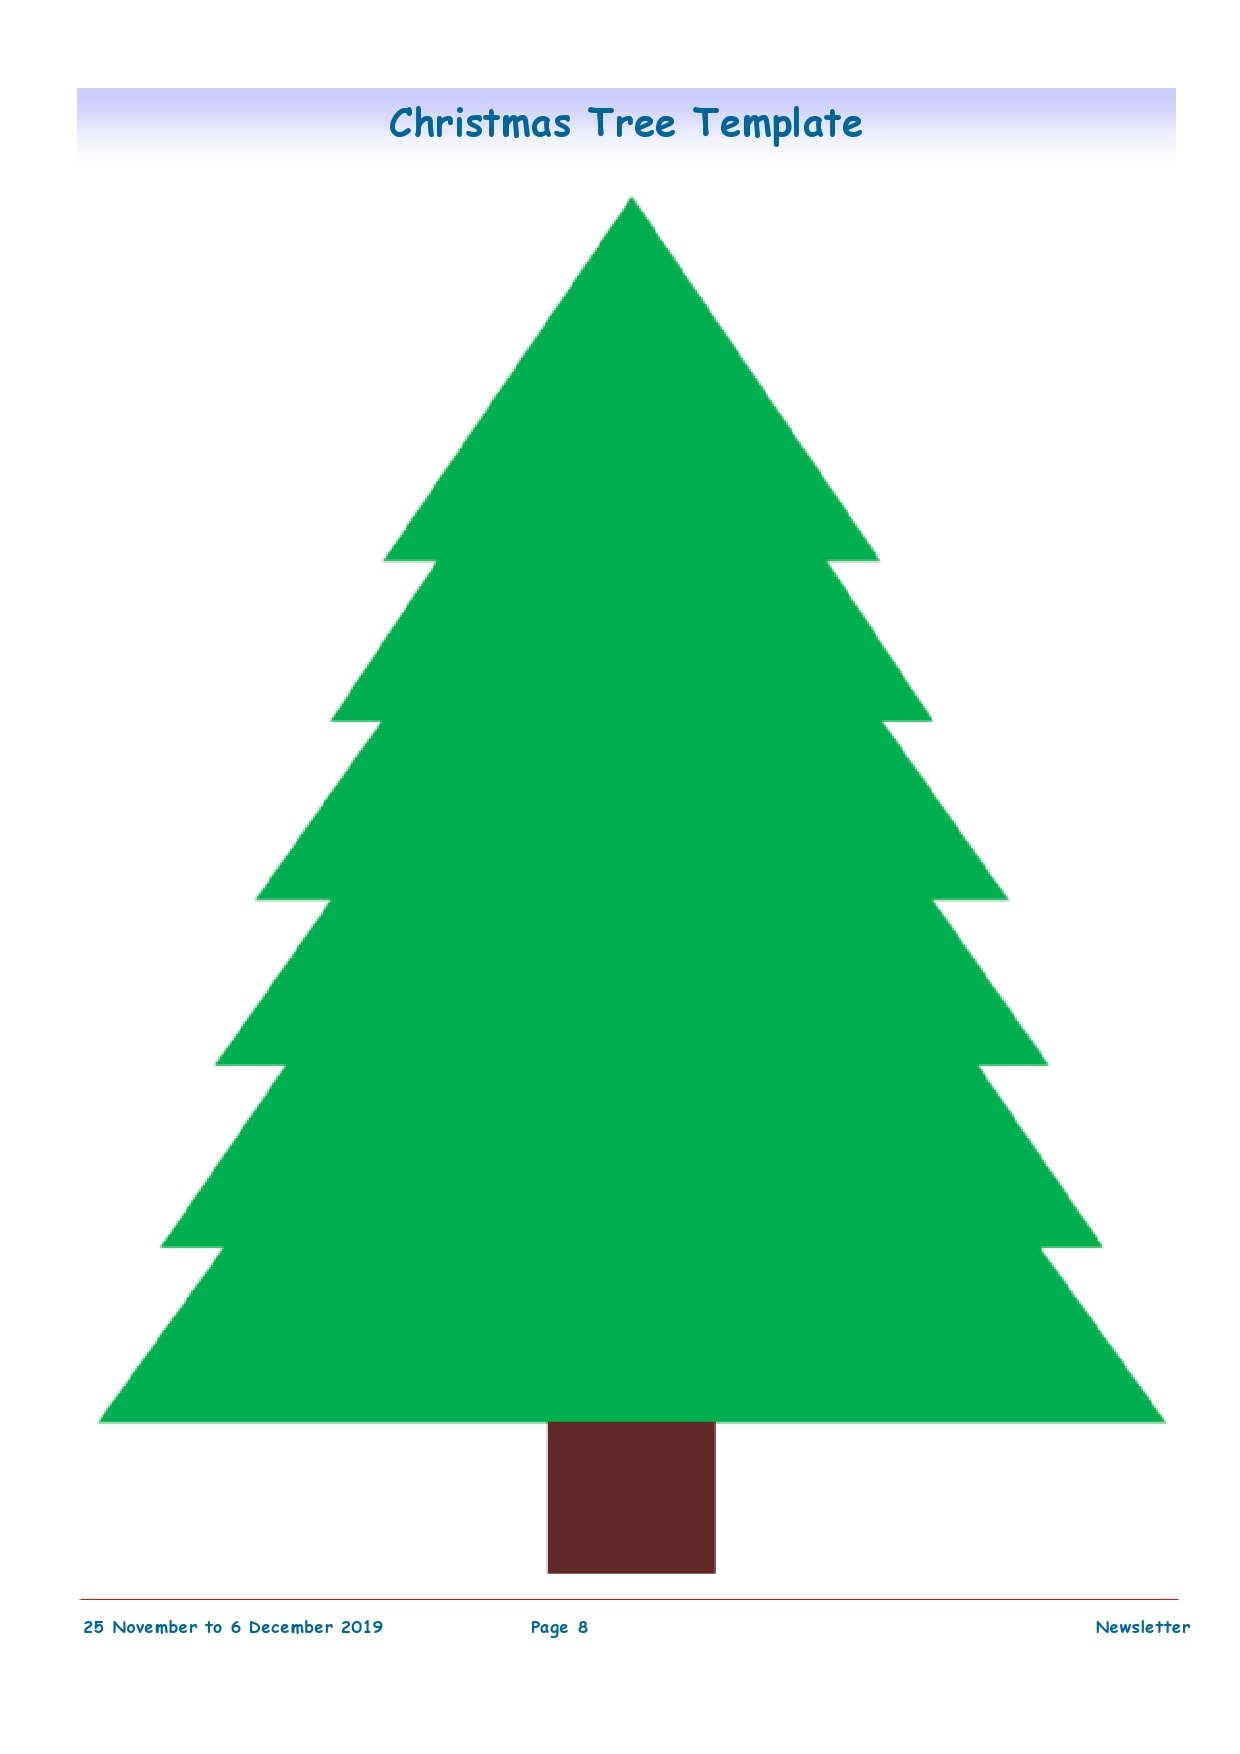 51 Printable Christmas Tree Templates Free Download PrintableTemplates